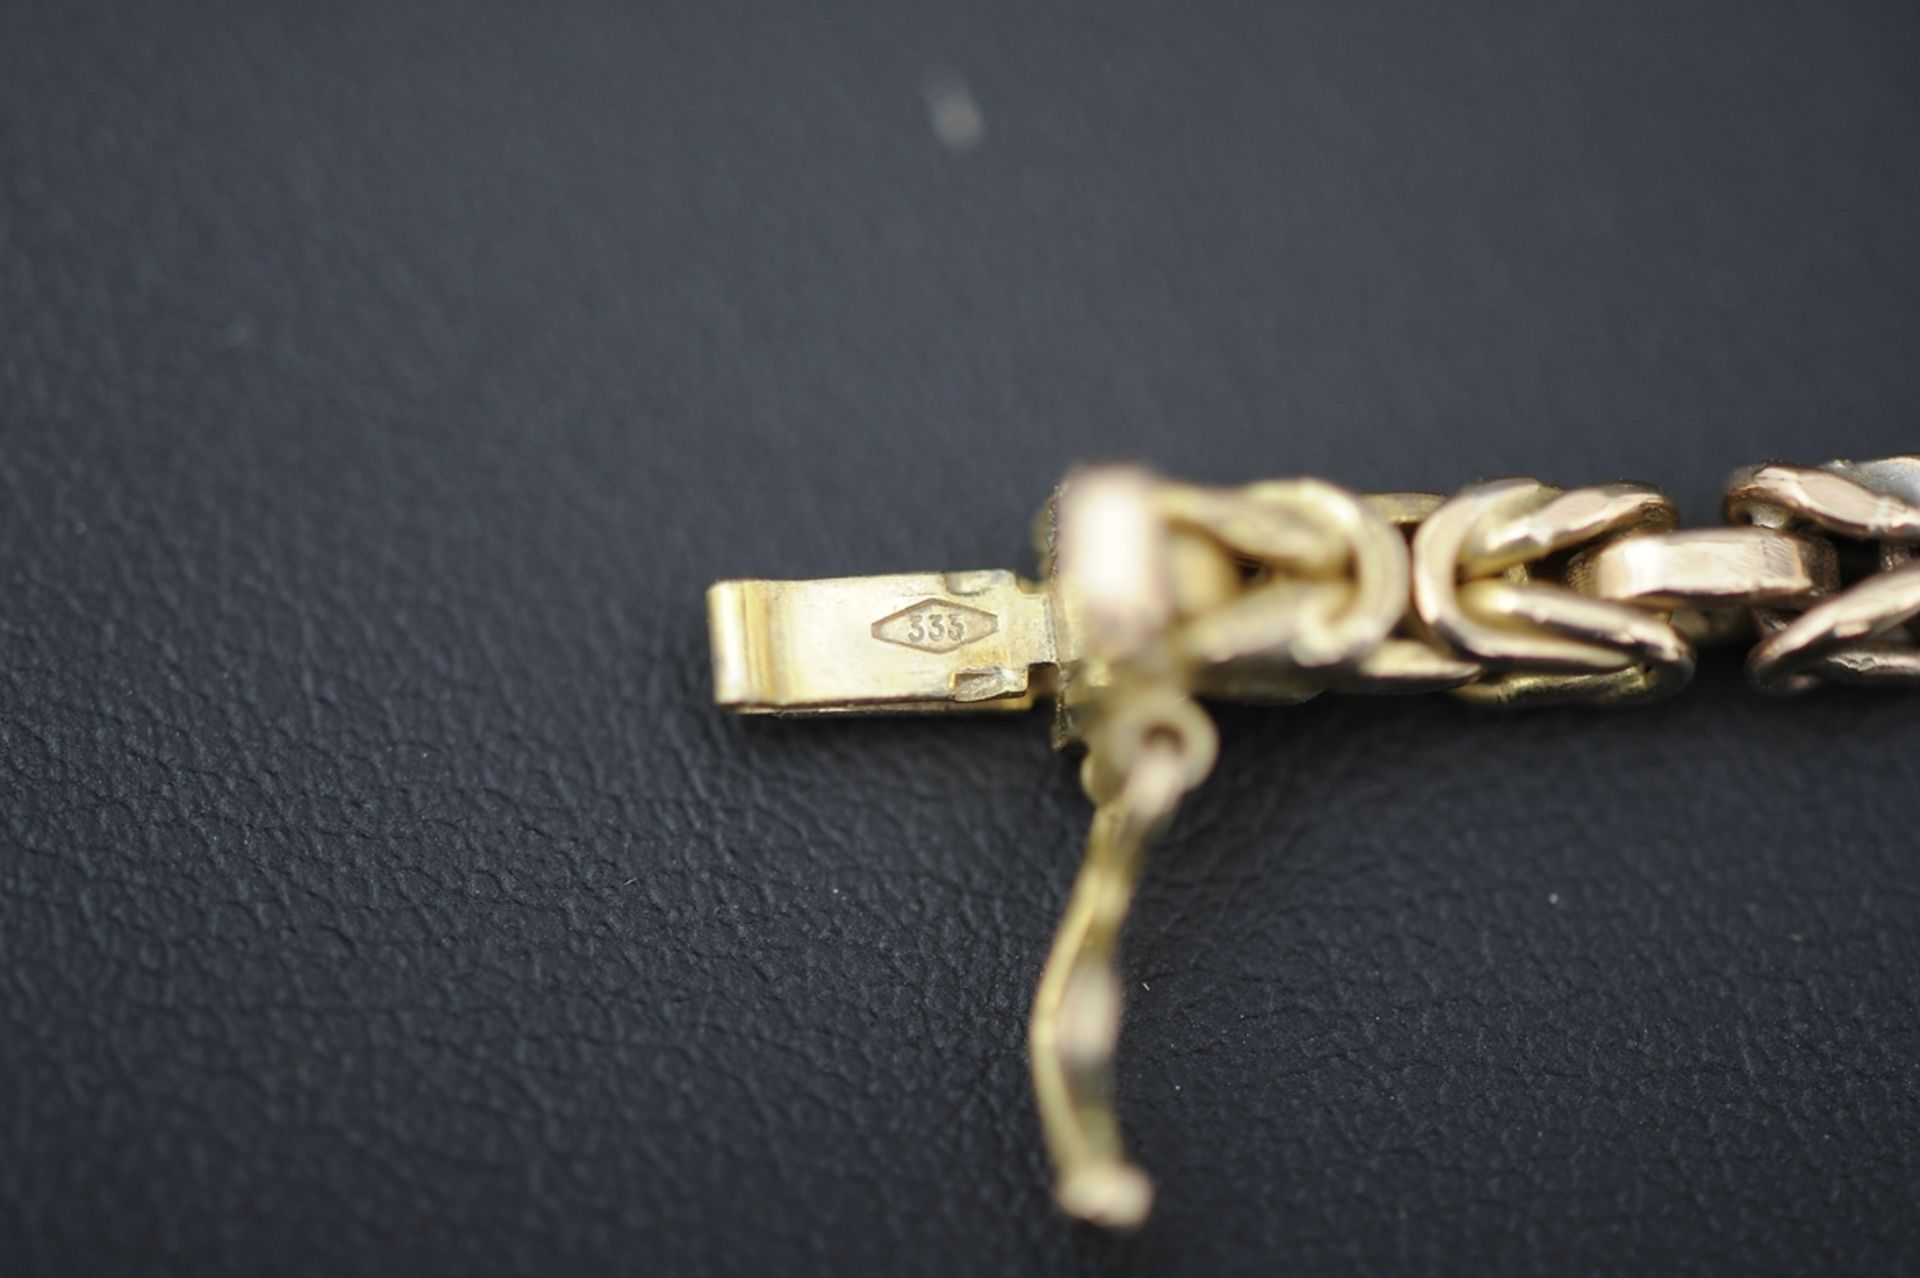 Halskette in 585er Gelbgold, aufwändiger Kettengliederdekor, 1 Stelle leicht aufgebogen, schadhaft. - Image 5 of 9